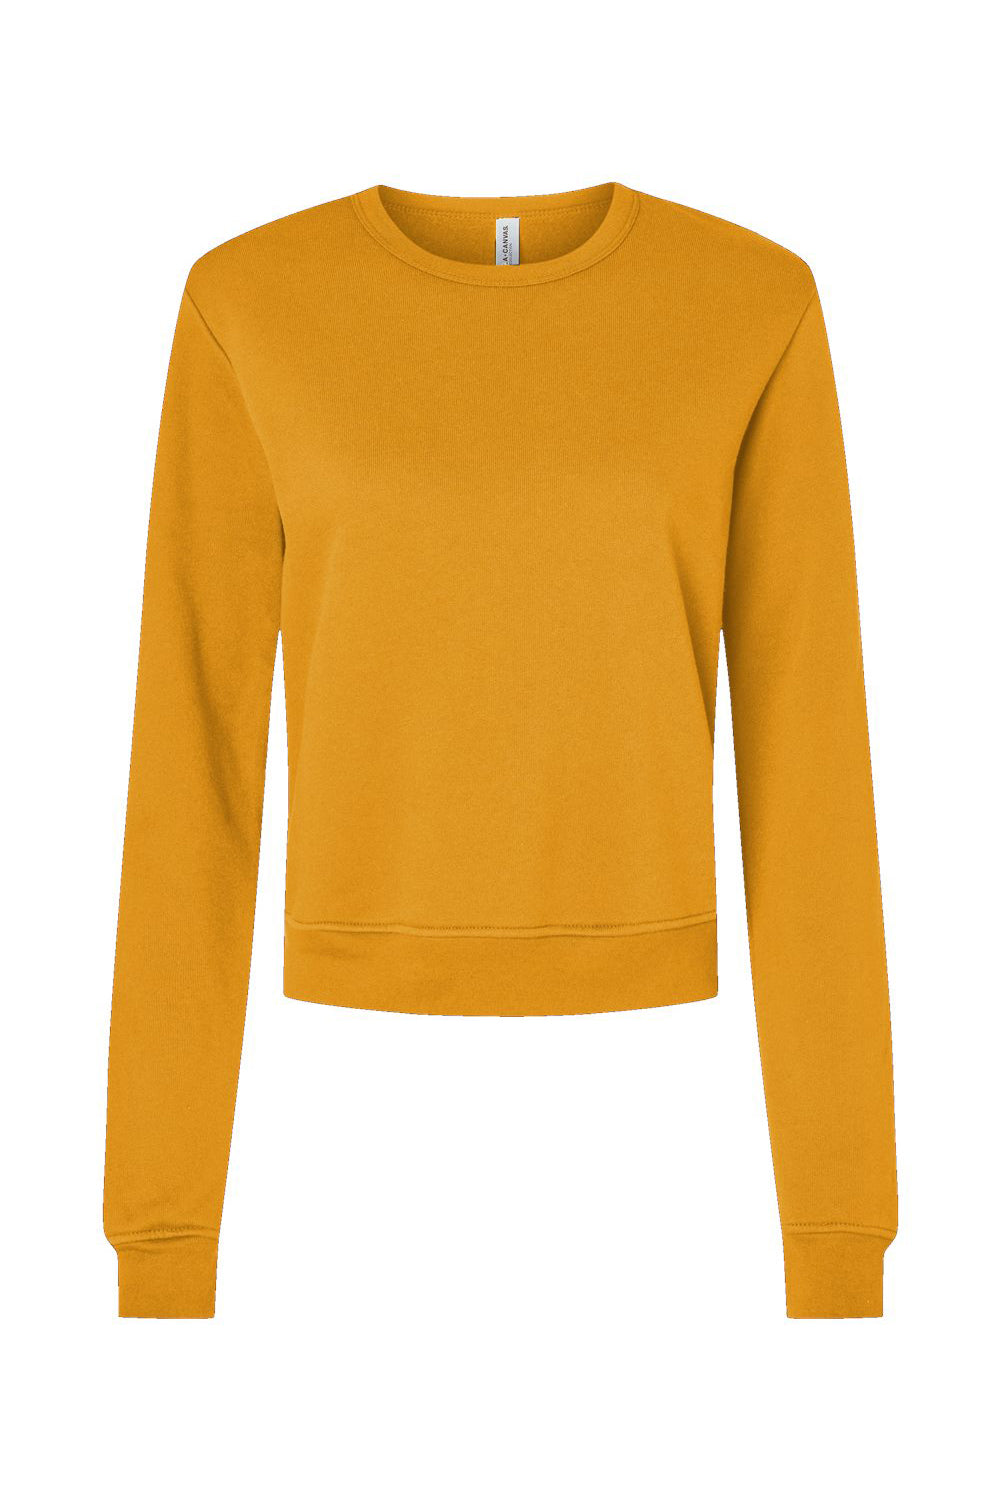 Bella + Canvas 7511 Womens Sponge Fleece Classic Crewneck Sweatshirt Heather Mustard Flat Front